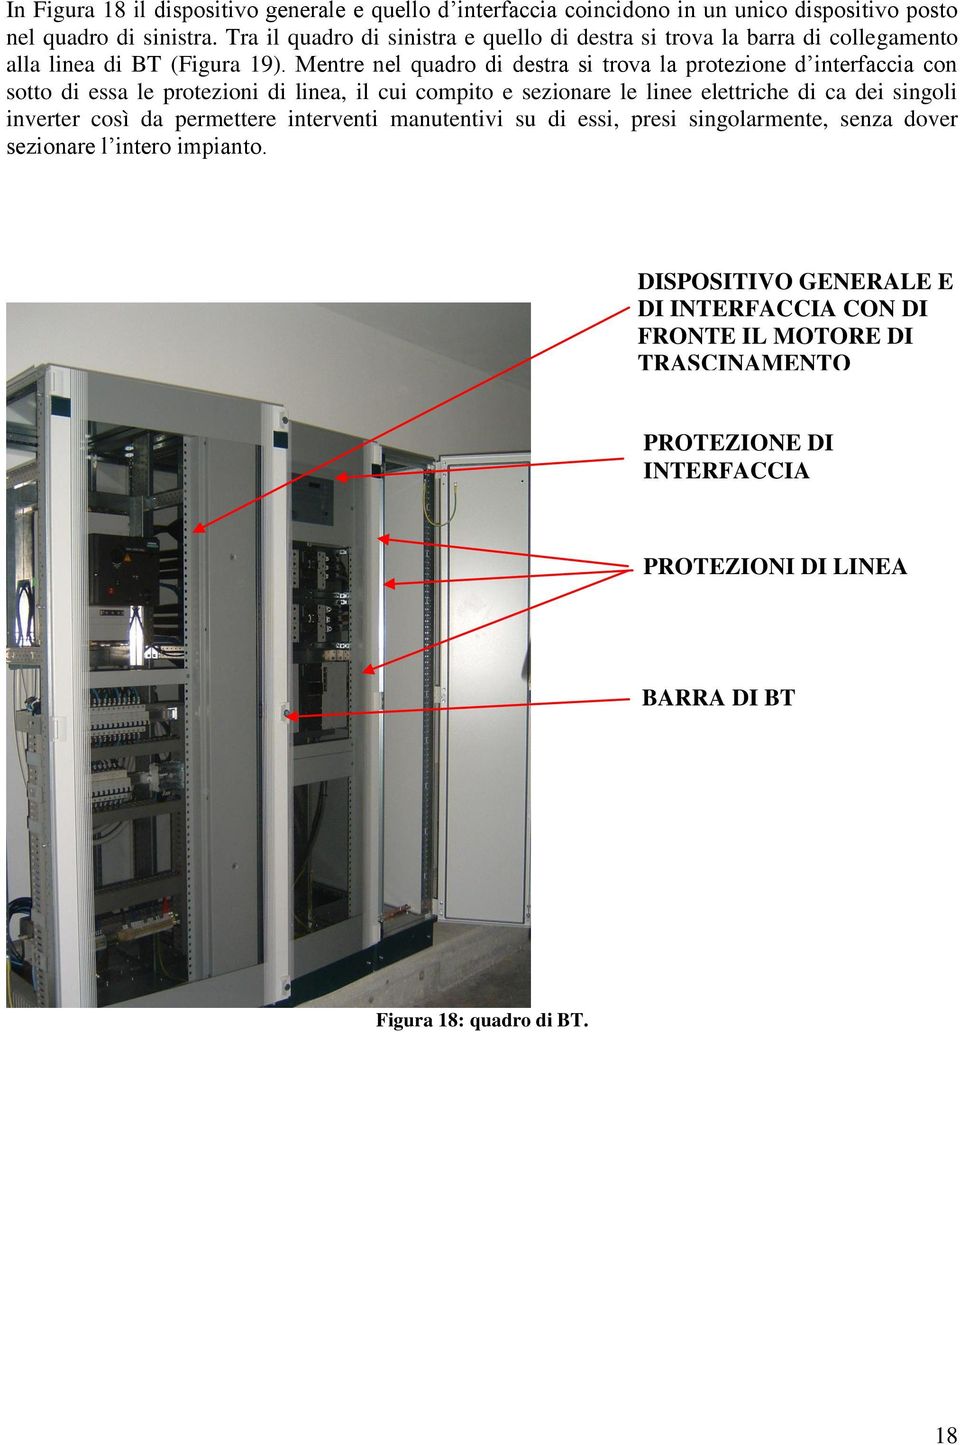 Mentre nel quadro di destra si trova la protezione d interfaccia con sotto di essa le protezioni di linea, il cui compito e sezionare le linee elettriche di ca dei singoli